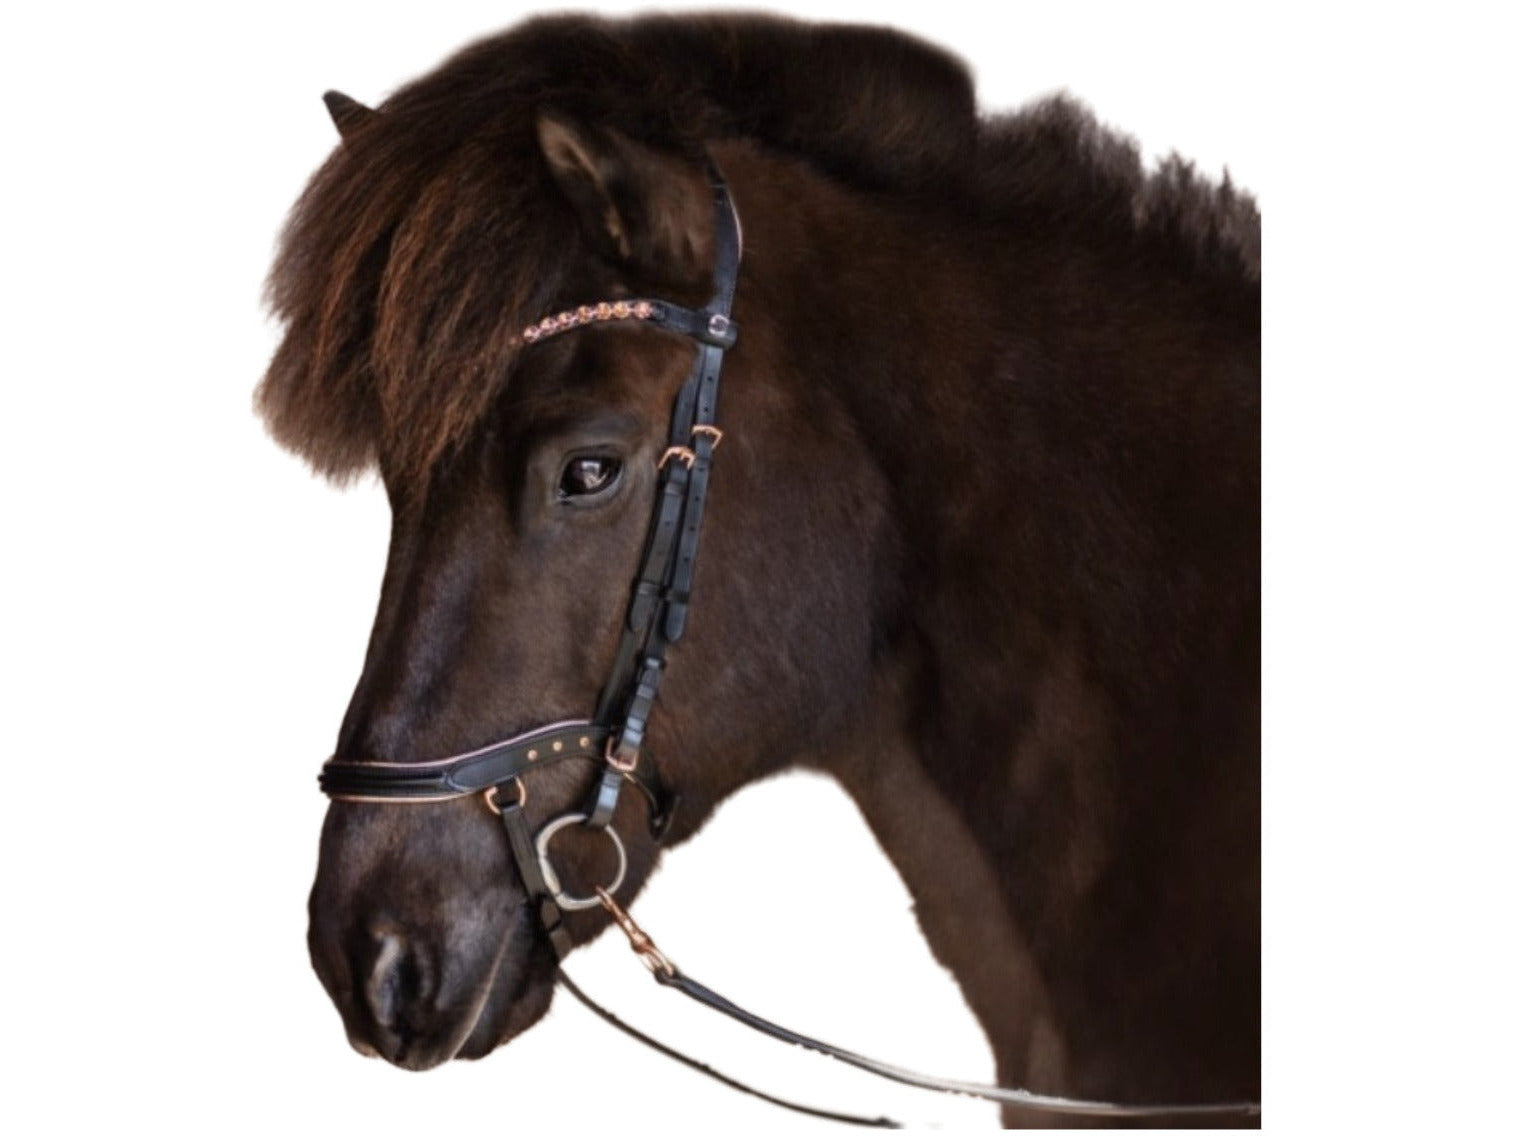 Die qualitativ hochwertige anatomische Trense in roségold von Epona bietet Deinem Islandpferd einen optimalen Tragekomfort und lässt Dein Pferd dabei elegant erstrahlen